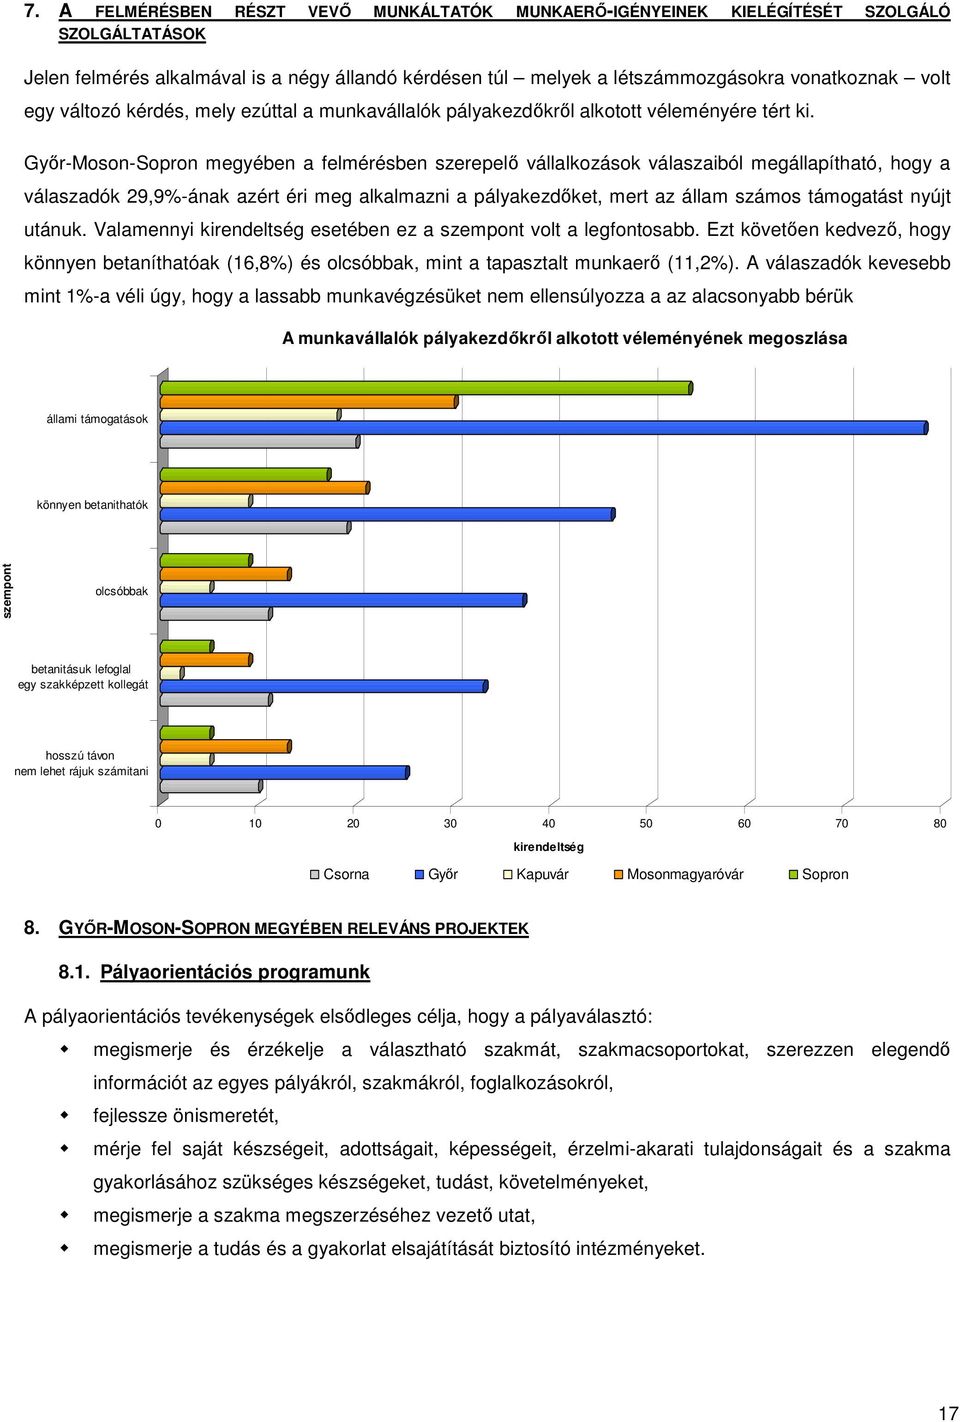 Győr-Moson-Sopron megyében a felmérésben szerepelő vállalkozások válaszaiból megállapítható, hogy a válaszadók 29,9%-ának azért éri meg alkalmazni a pályakezdőket, mert az állam számos támogatást